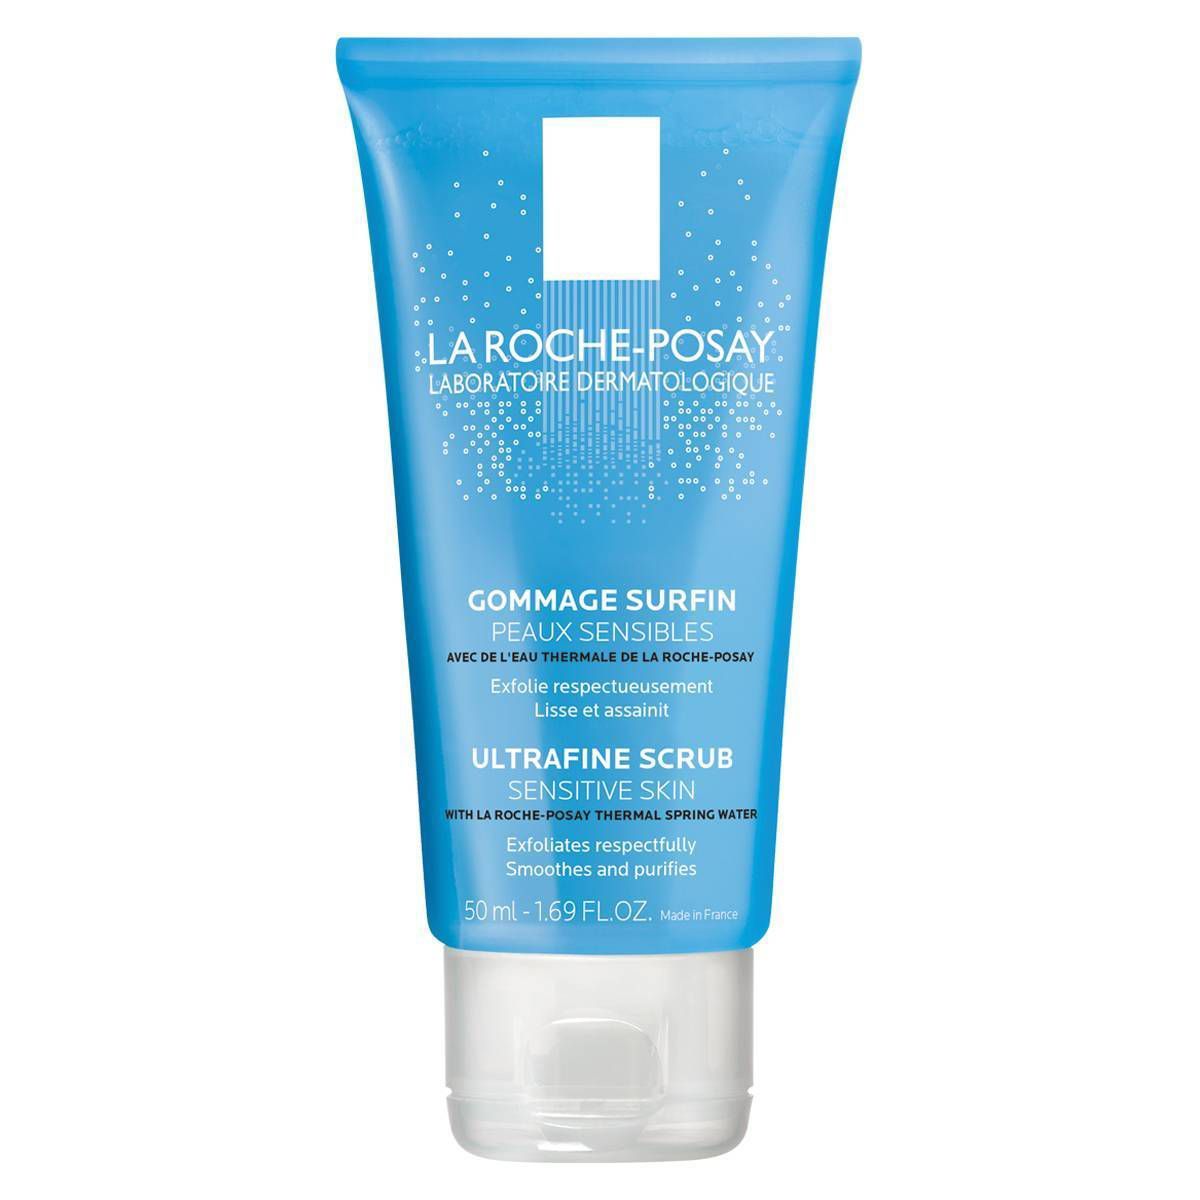 La Roche Posay Ultra-Fine Exfoliating Scrub Face Wash for Sensitive Skin - 1.69oz | Target